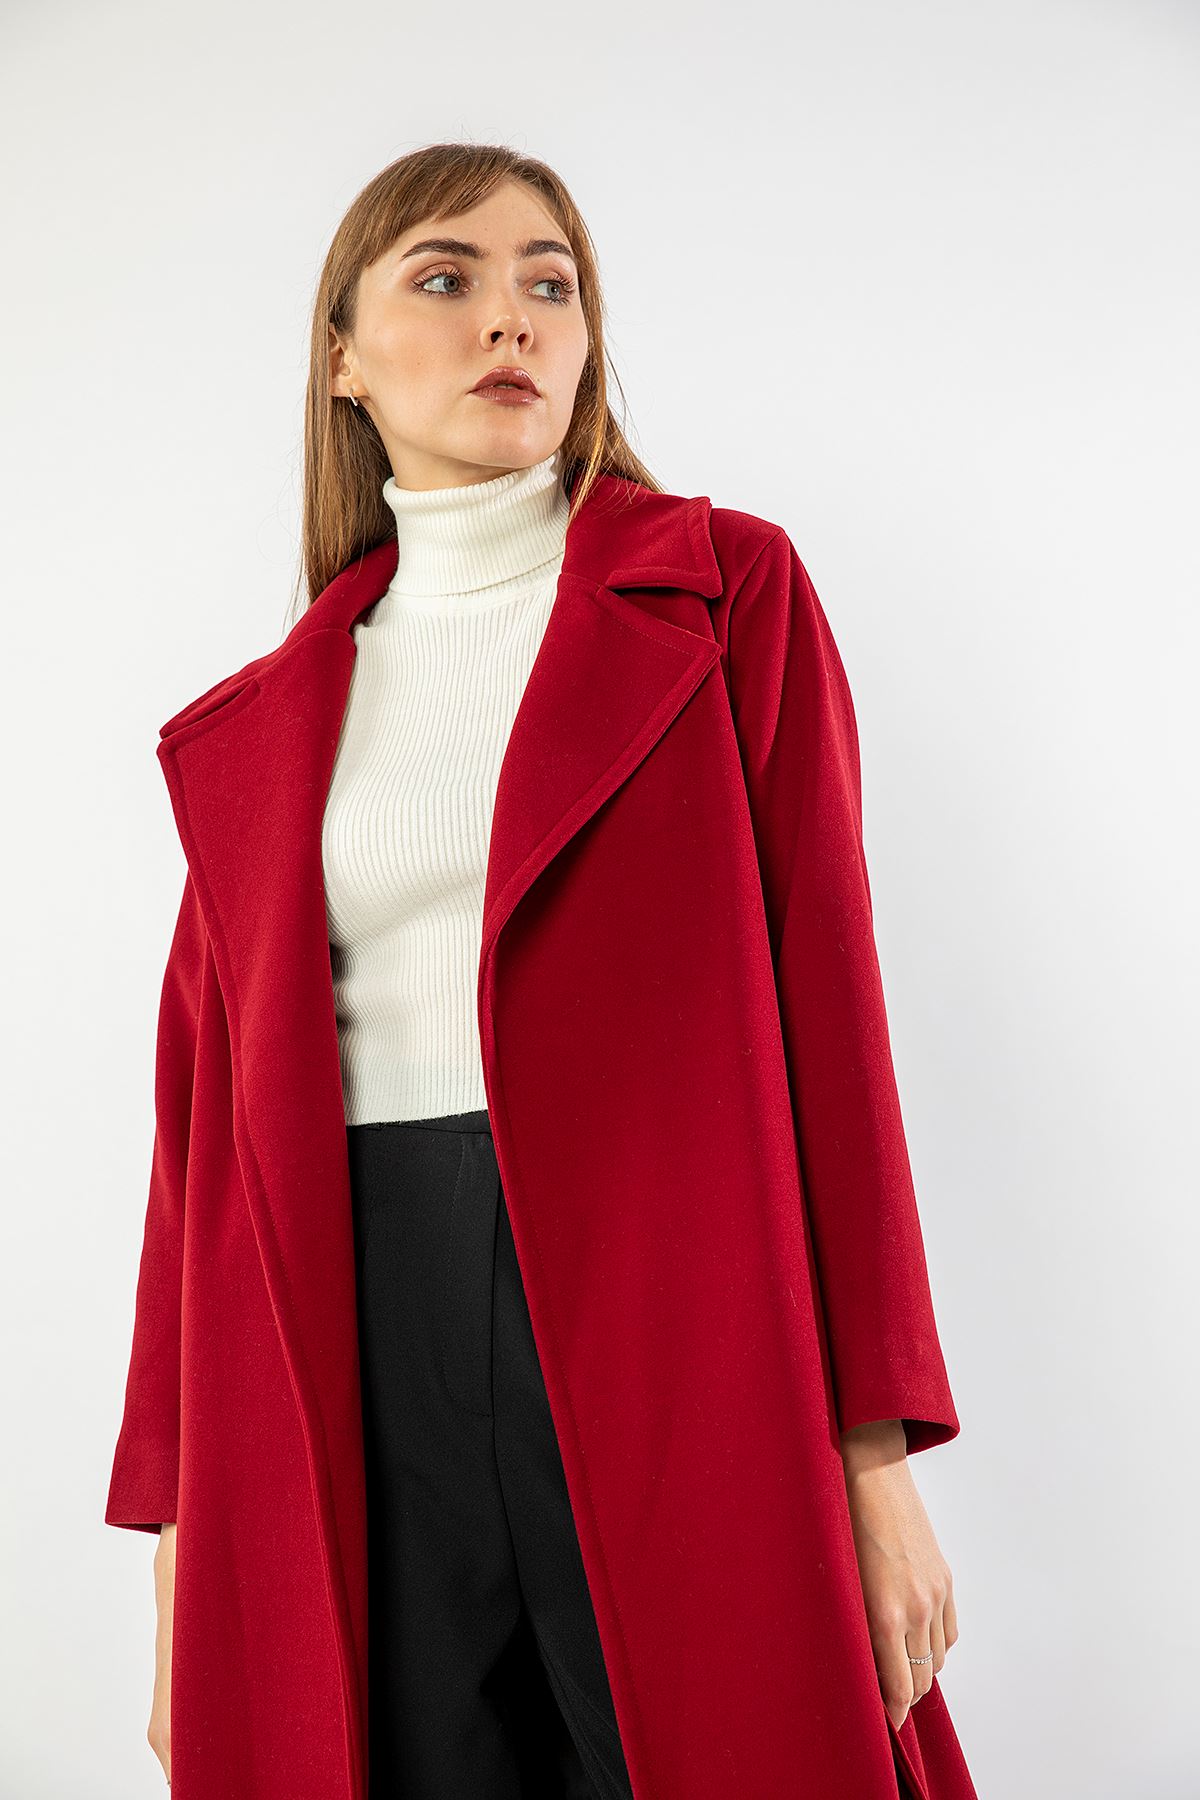 Long Sleeve Revere Collar Long Belted Women'S Coat - Burgundy